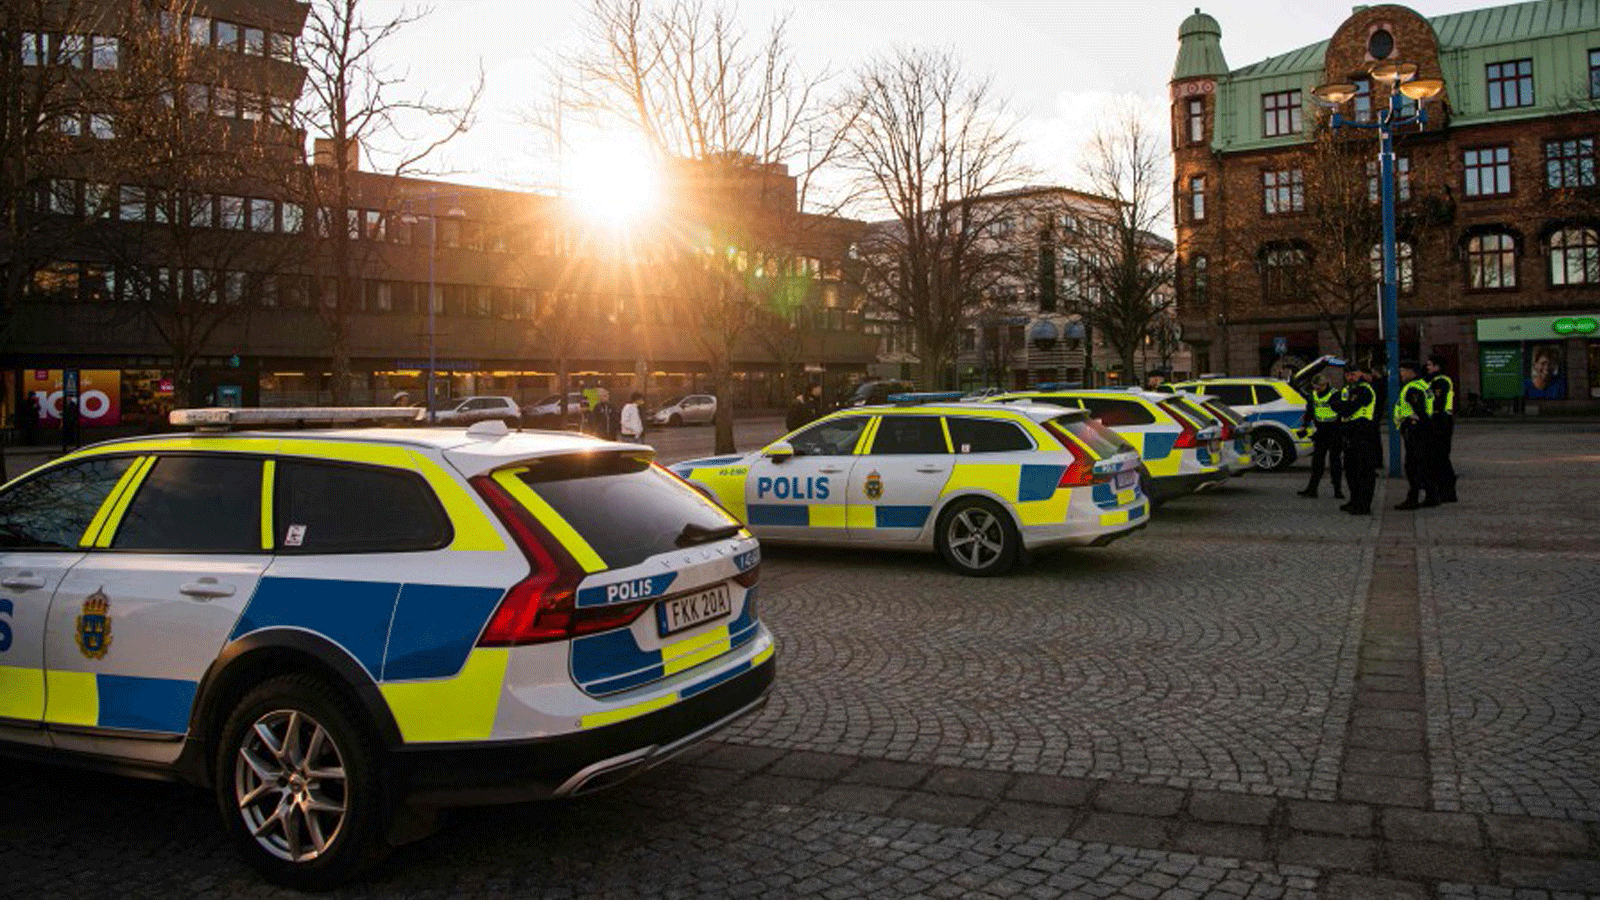 سيارات الشرطة متوقفة في ساحة رئيسية في مدينة فيتلاندا، السويد في 4 آذار/مارس 2021، بعد يومٍ واحد من هجوم الطعن.